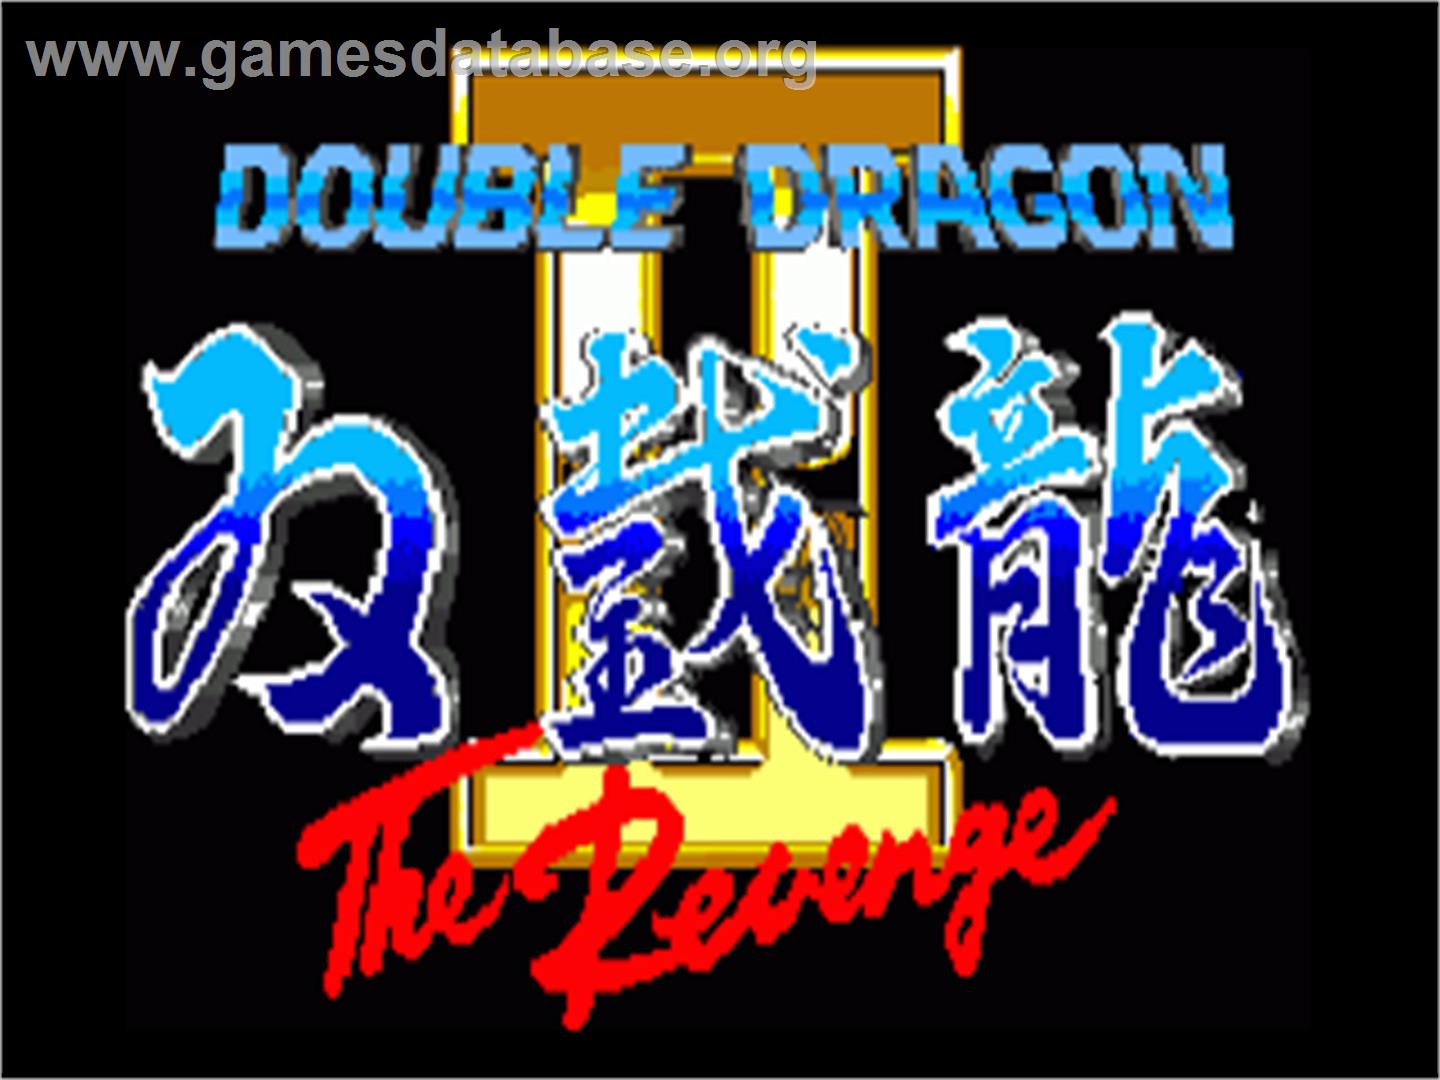 Double Dragon II - The Revenge - Commodore Amiga - Artwork - Title Screen